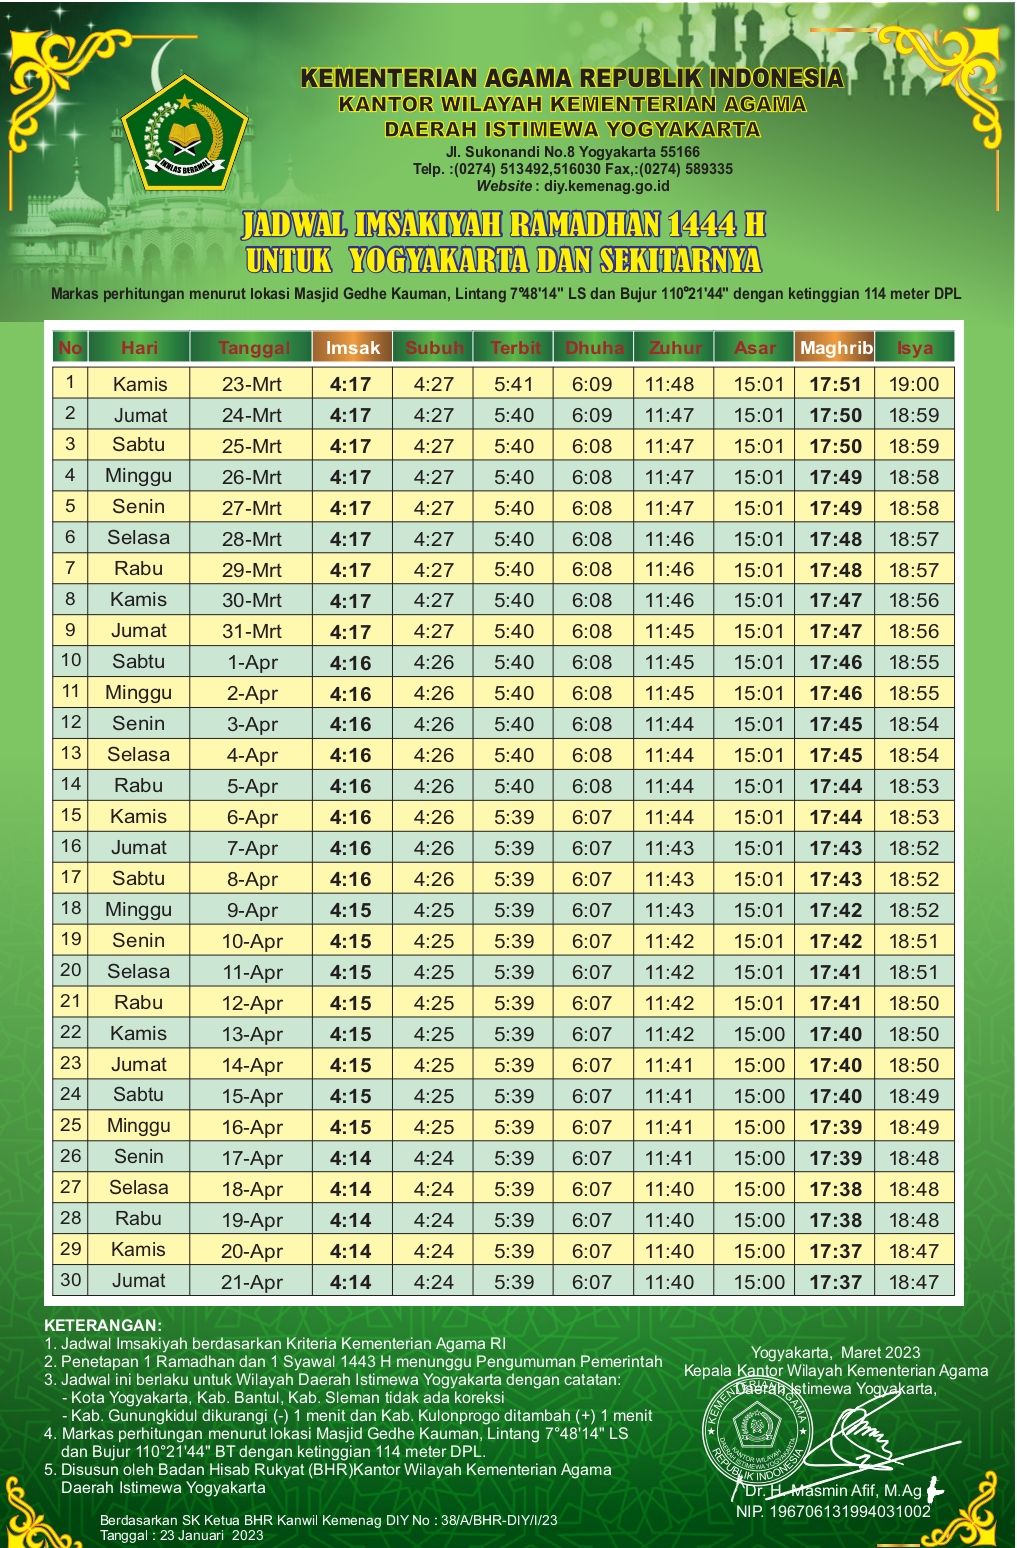 Jadwal Imsakiyah Ramadhan dan Waktu Shalat untuk Yogyakarta dan Sekitarnya